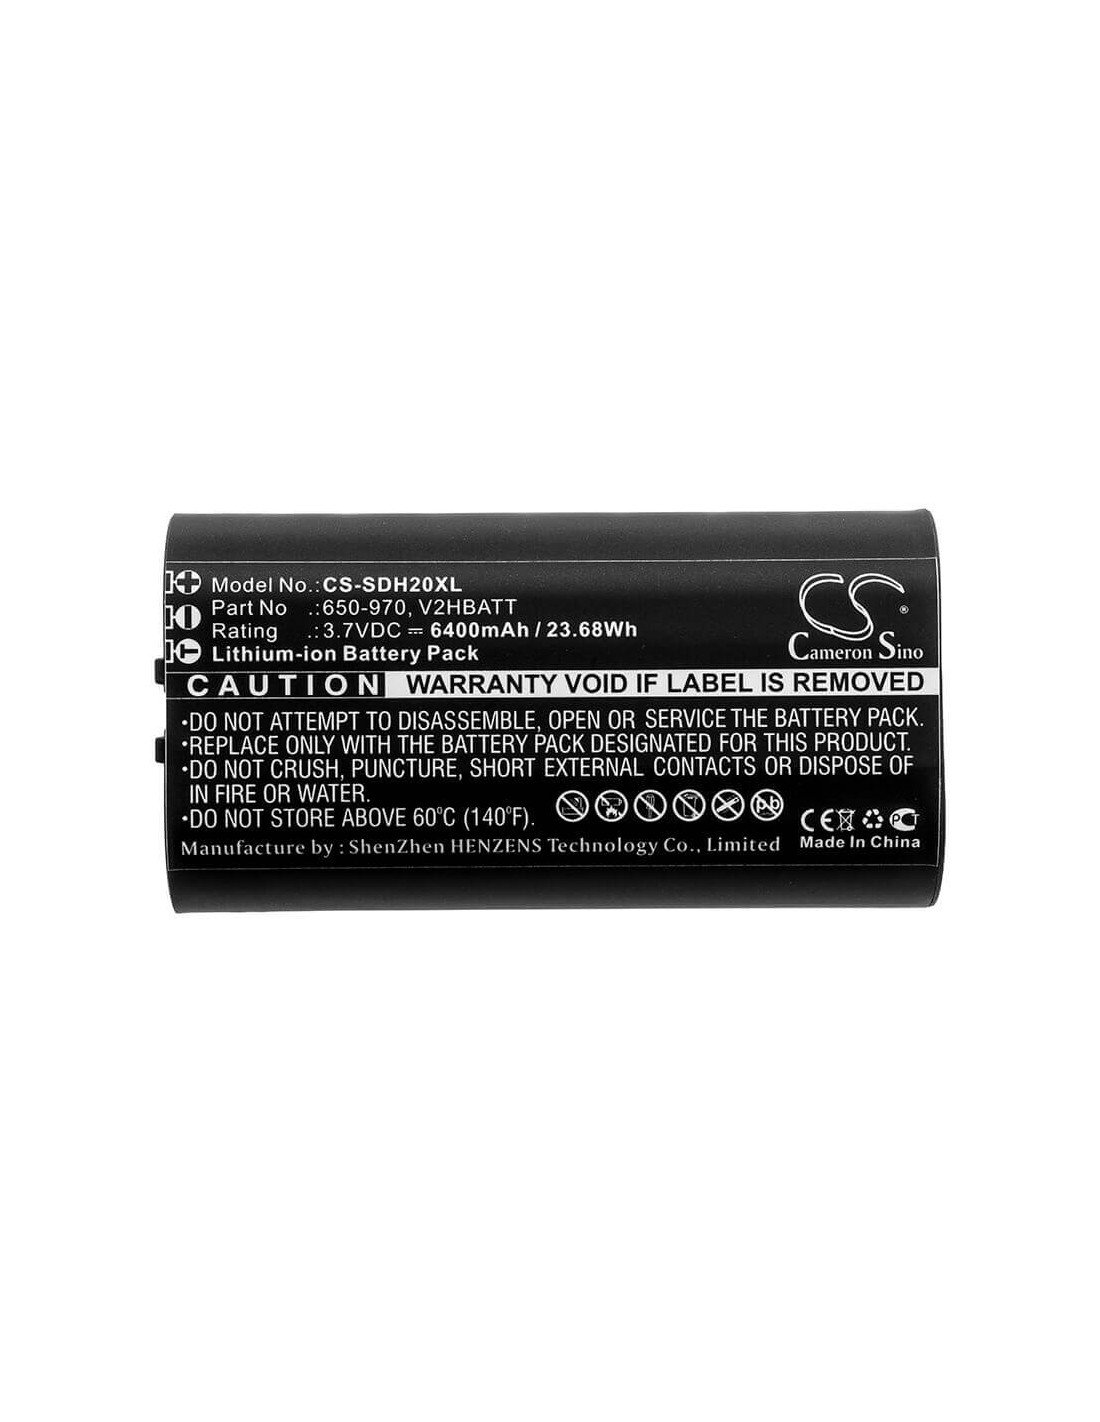 Battery for Sportdog, Tek 2.0 Gps Handheld 3.7V, 6400mAh - 23.68Wh